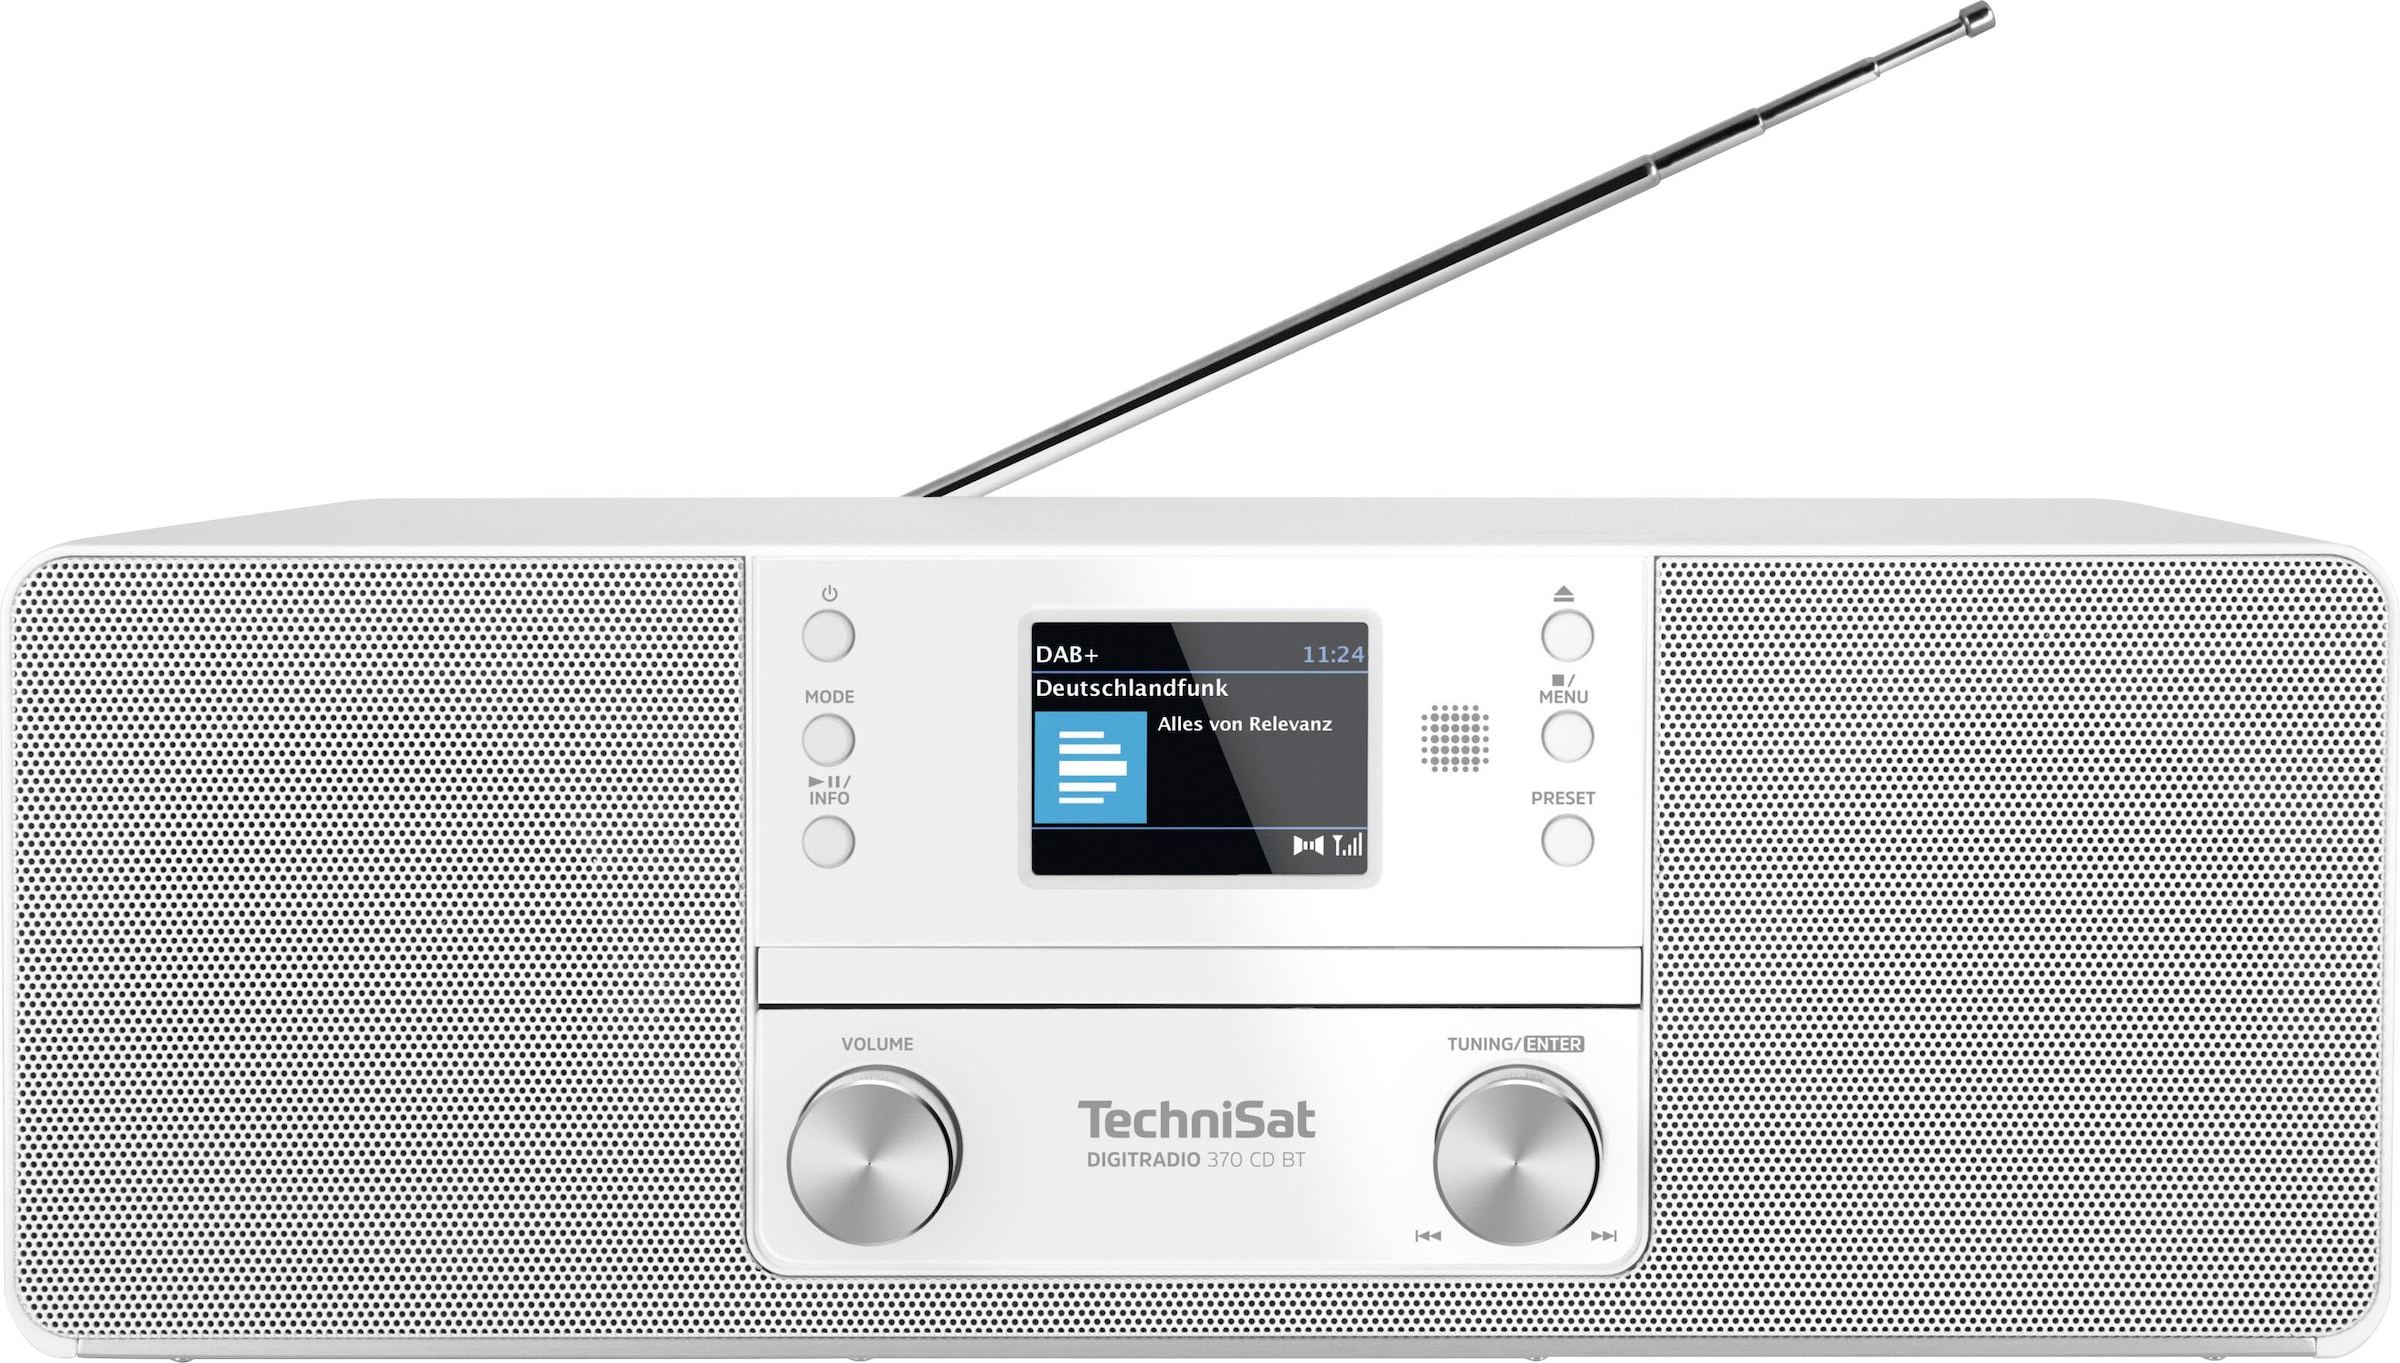 CD BT«, bei 370 RDS UKW OTTO -Digitalradio (Bluetooth Digitalradio (DAB+) jetzt TechniSat (DAB+) »DIGITRADIO mit kaufen W) 10